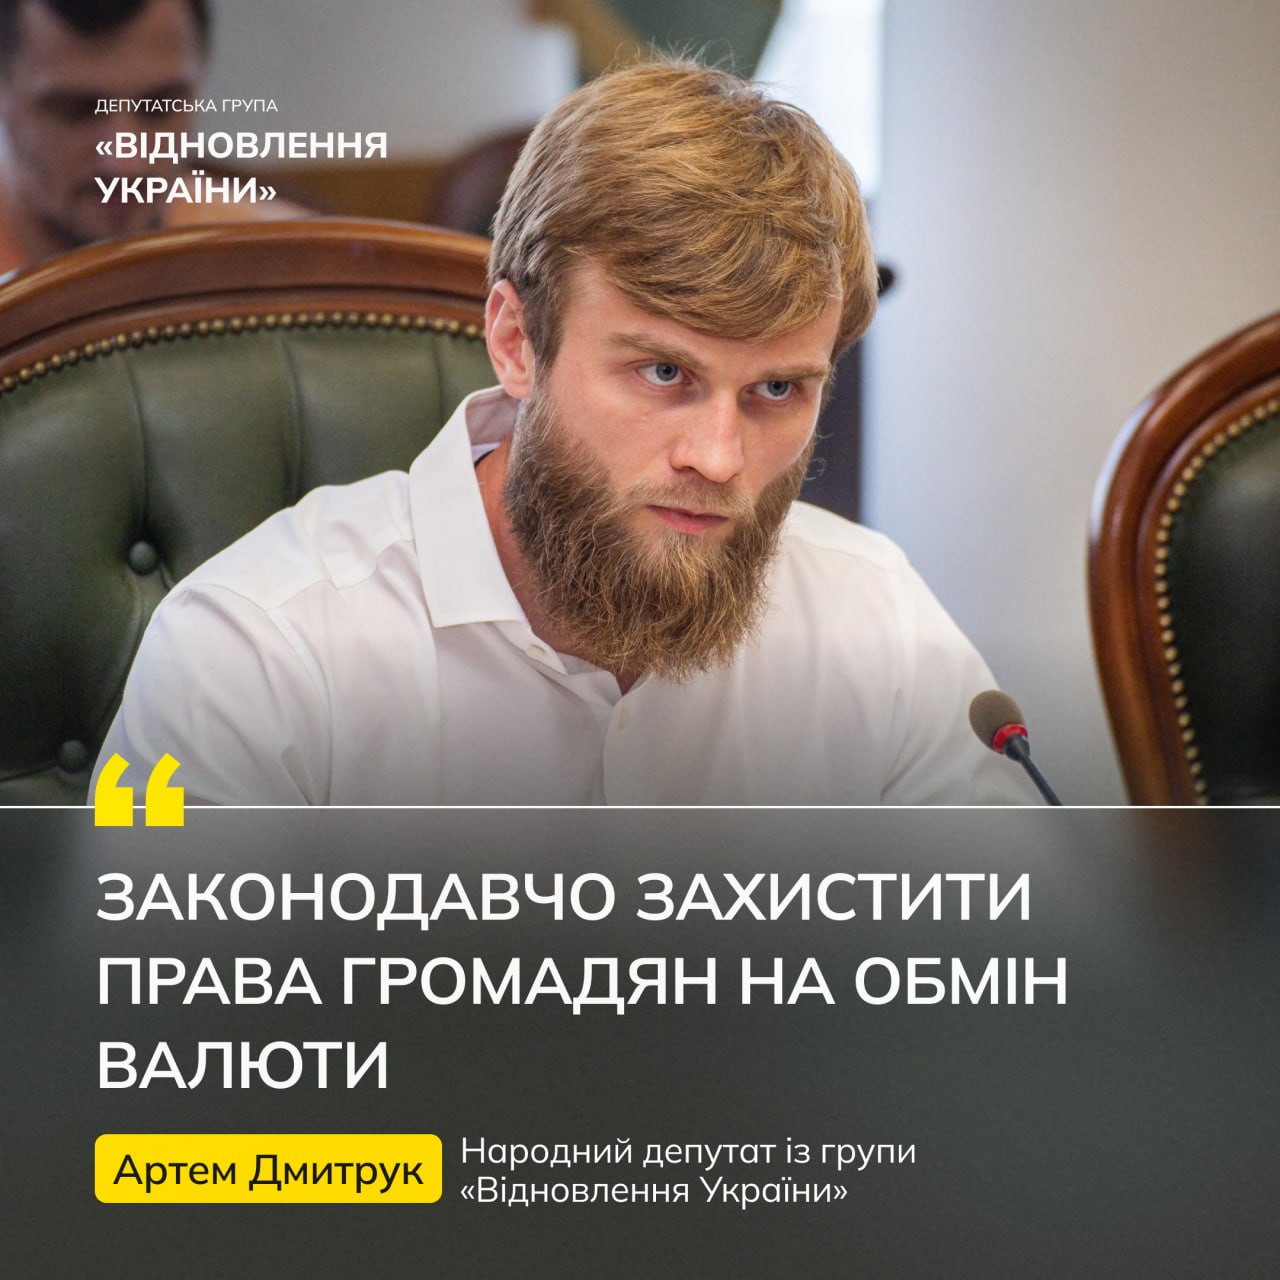 Артем Дмитрук, народний депутат із групи "Відновлення України"